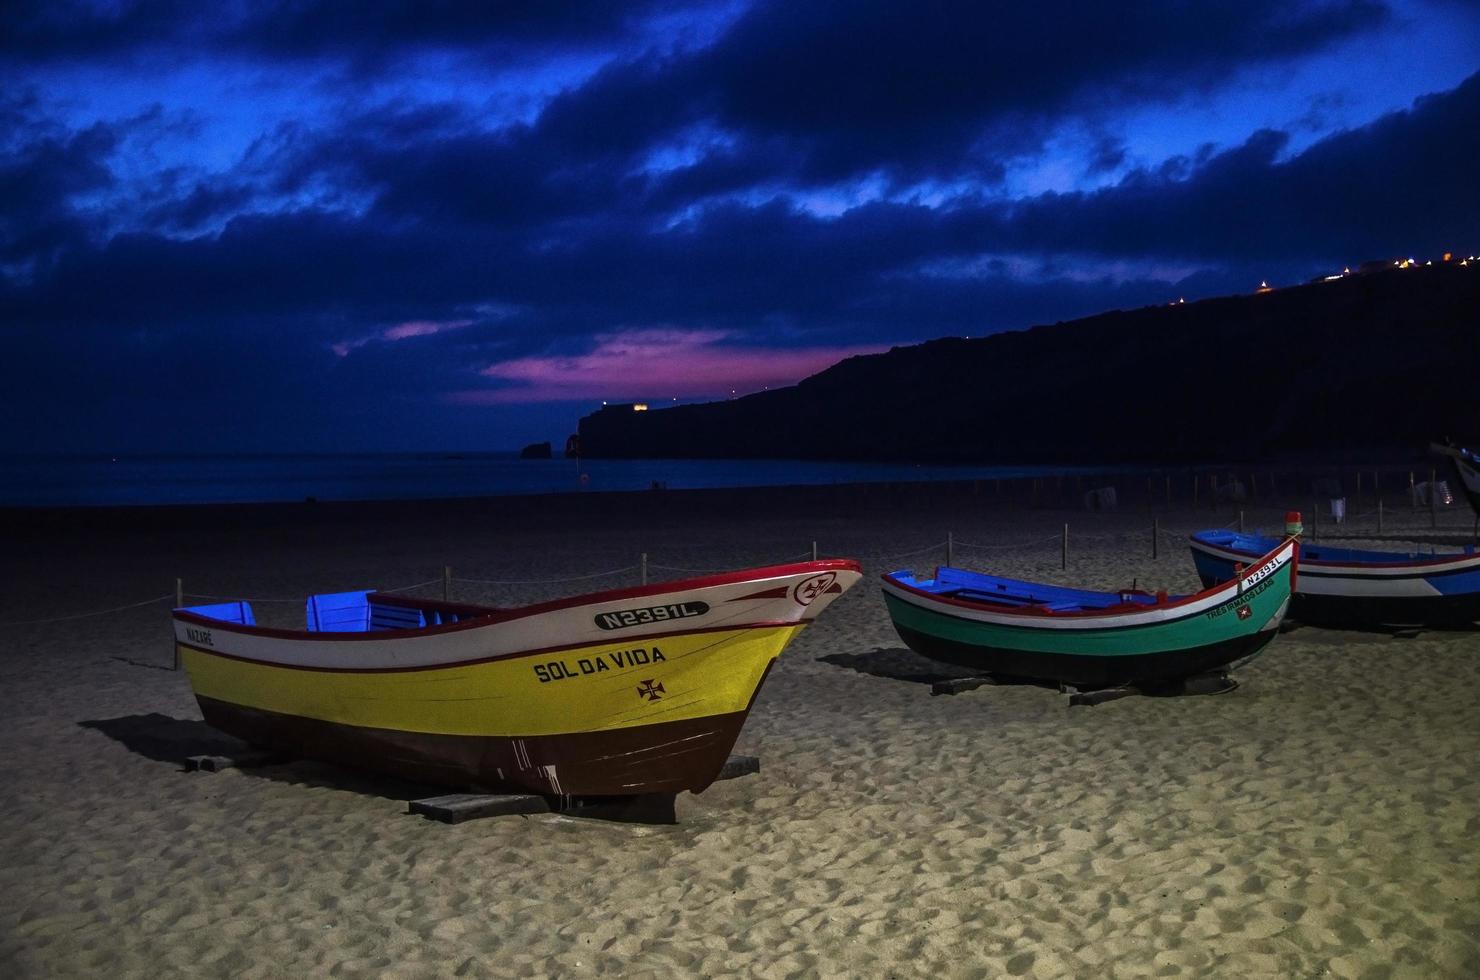 nazare, portugal - 21 juin 2017 bateaux de pêche traditionnels sur la plage de sable de nazare au coucher du soleil crépuscule crépuscule, portugal, océan atlantique photo